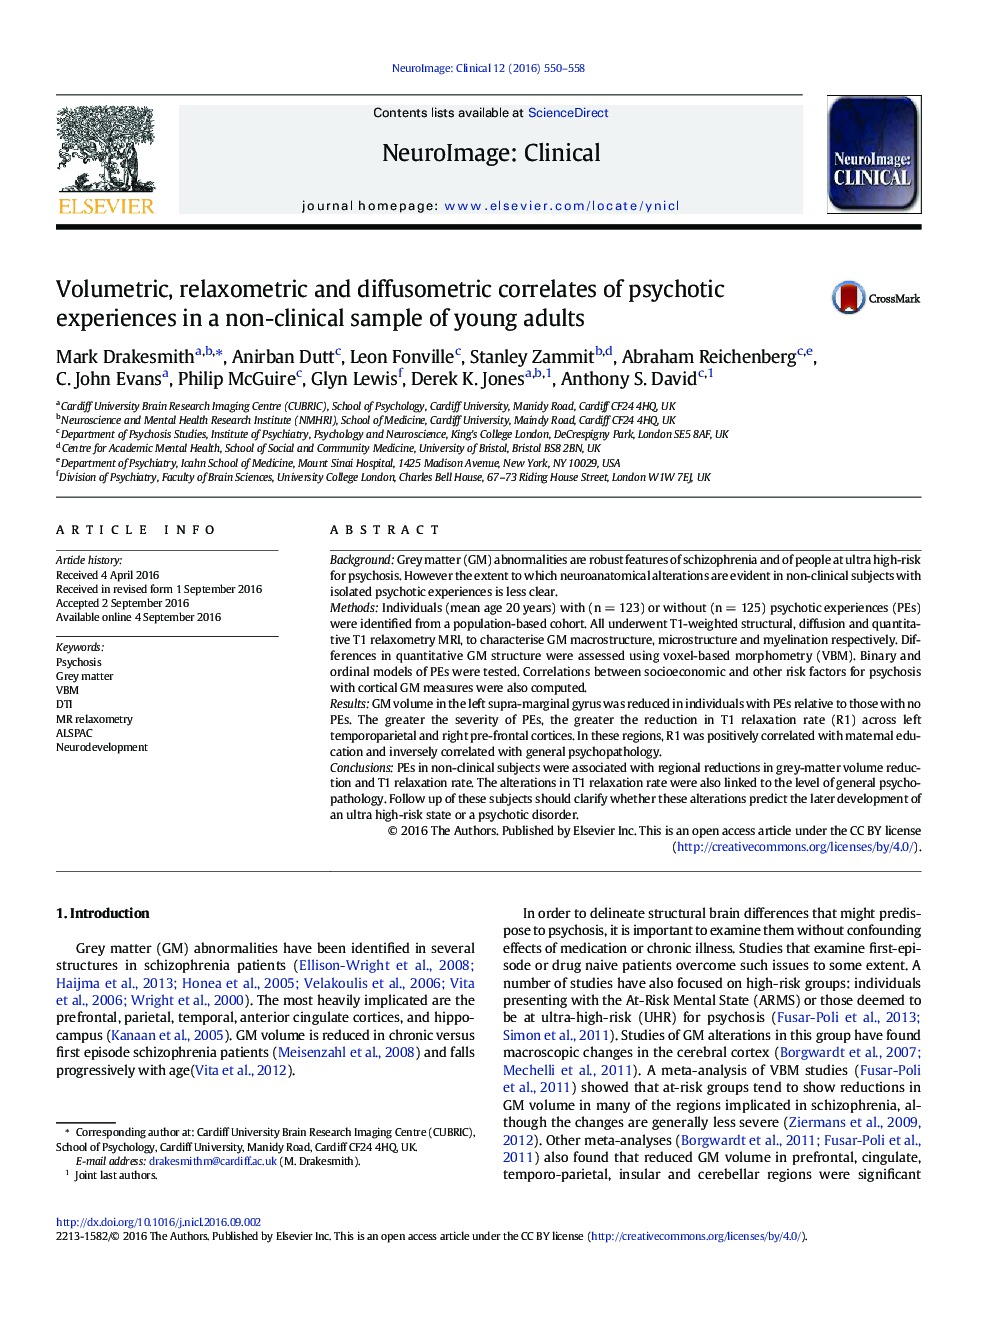 ارتباطات حجمی، آرامستومتری و پرفومومتری تجربیات روانگردان در نمونه غیر بالینی بزرگسالان جوان 